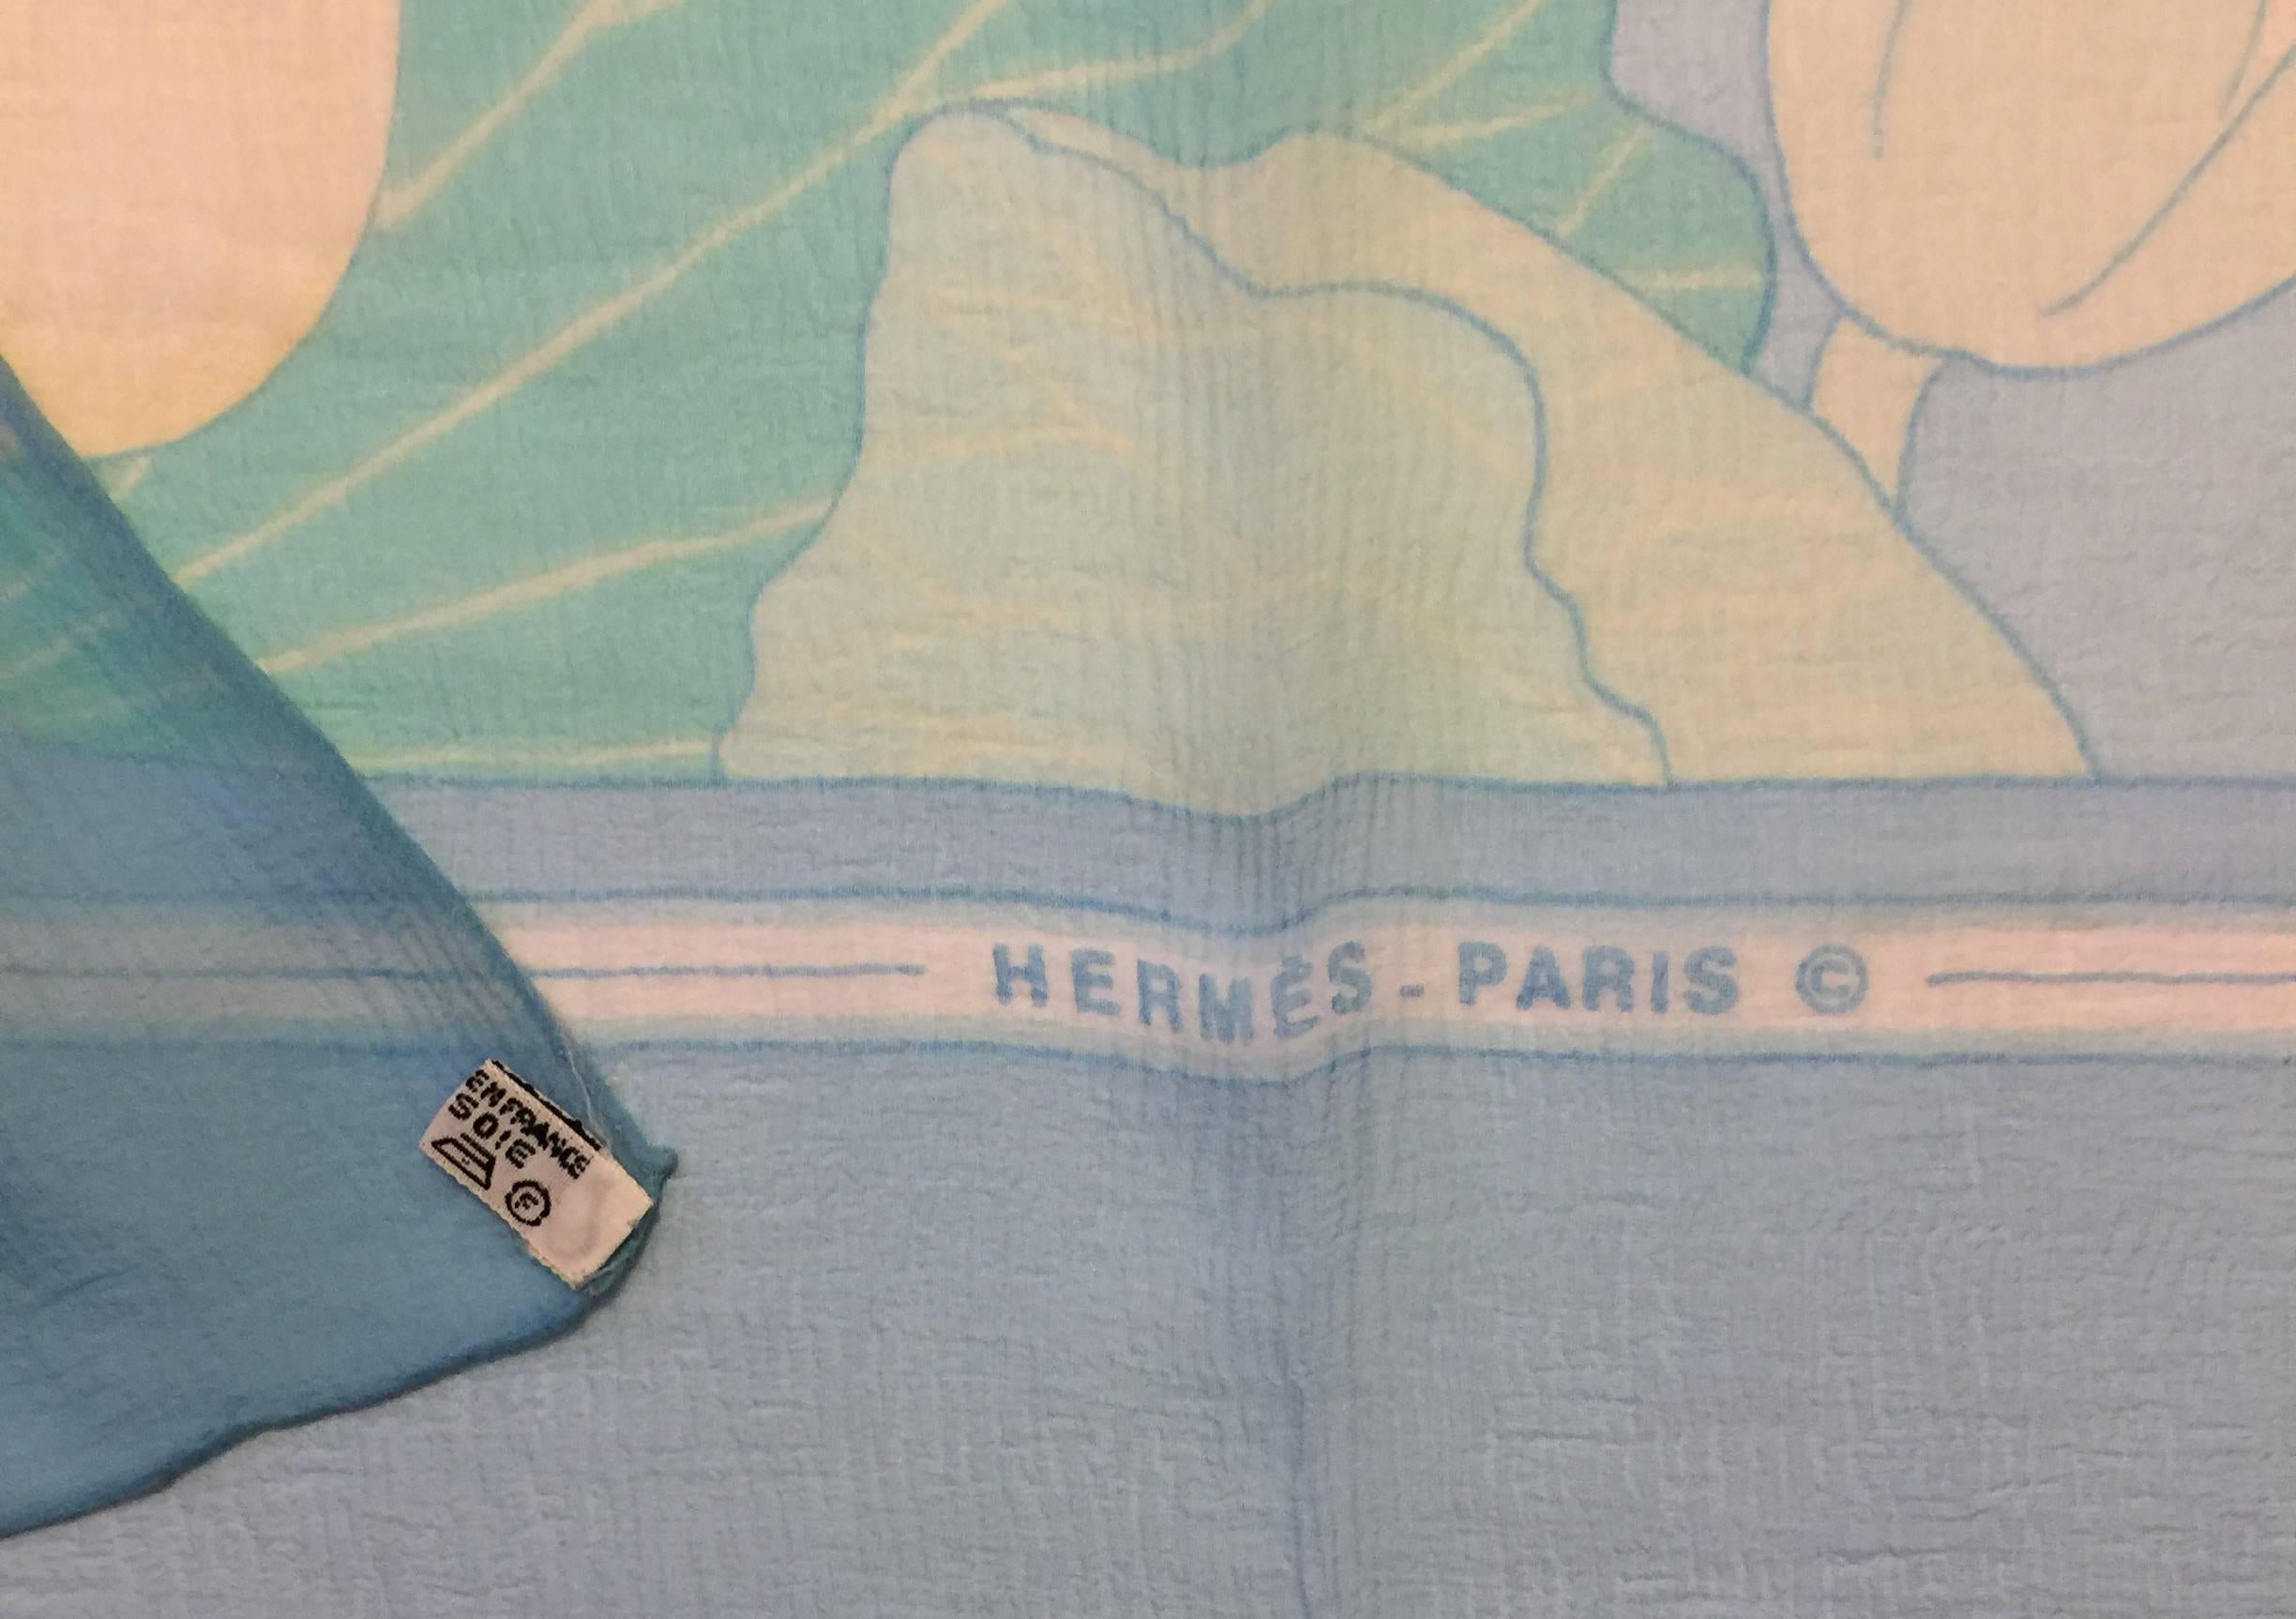 Blue Hermes Paris Silk Mousseline Scarf by Christiane Vauzelles. 